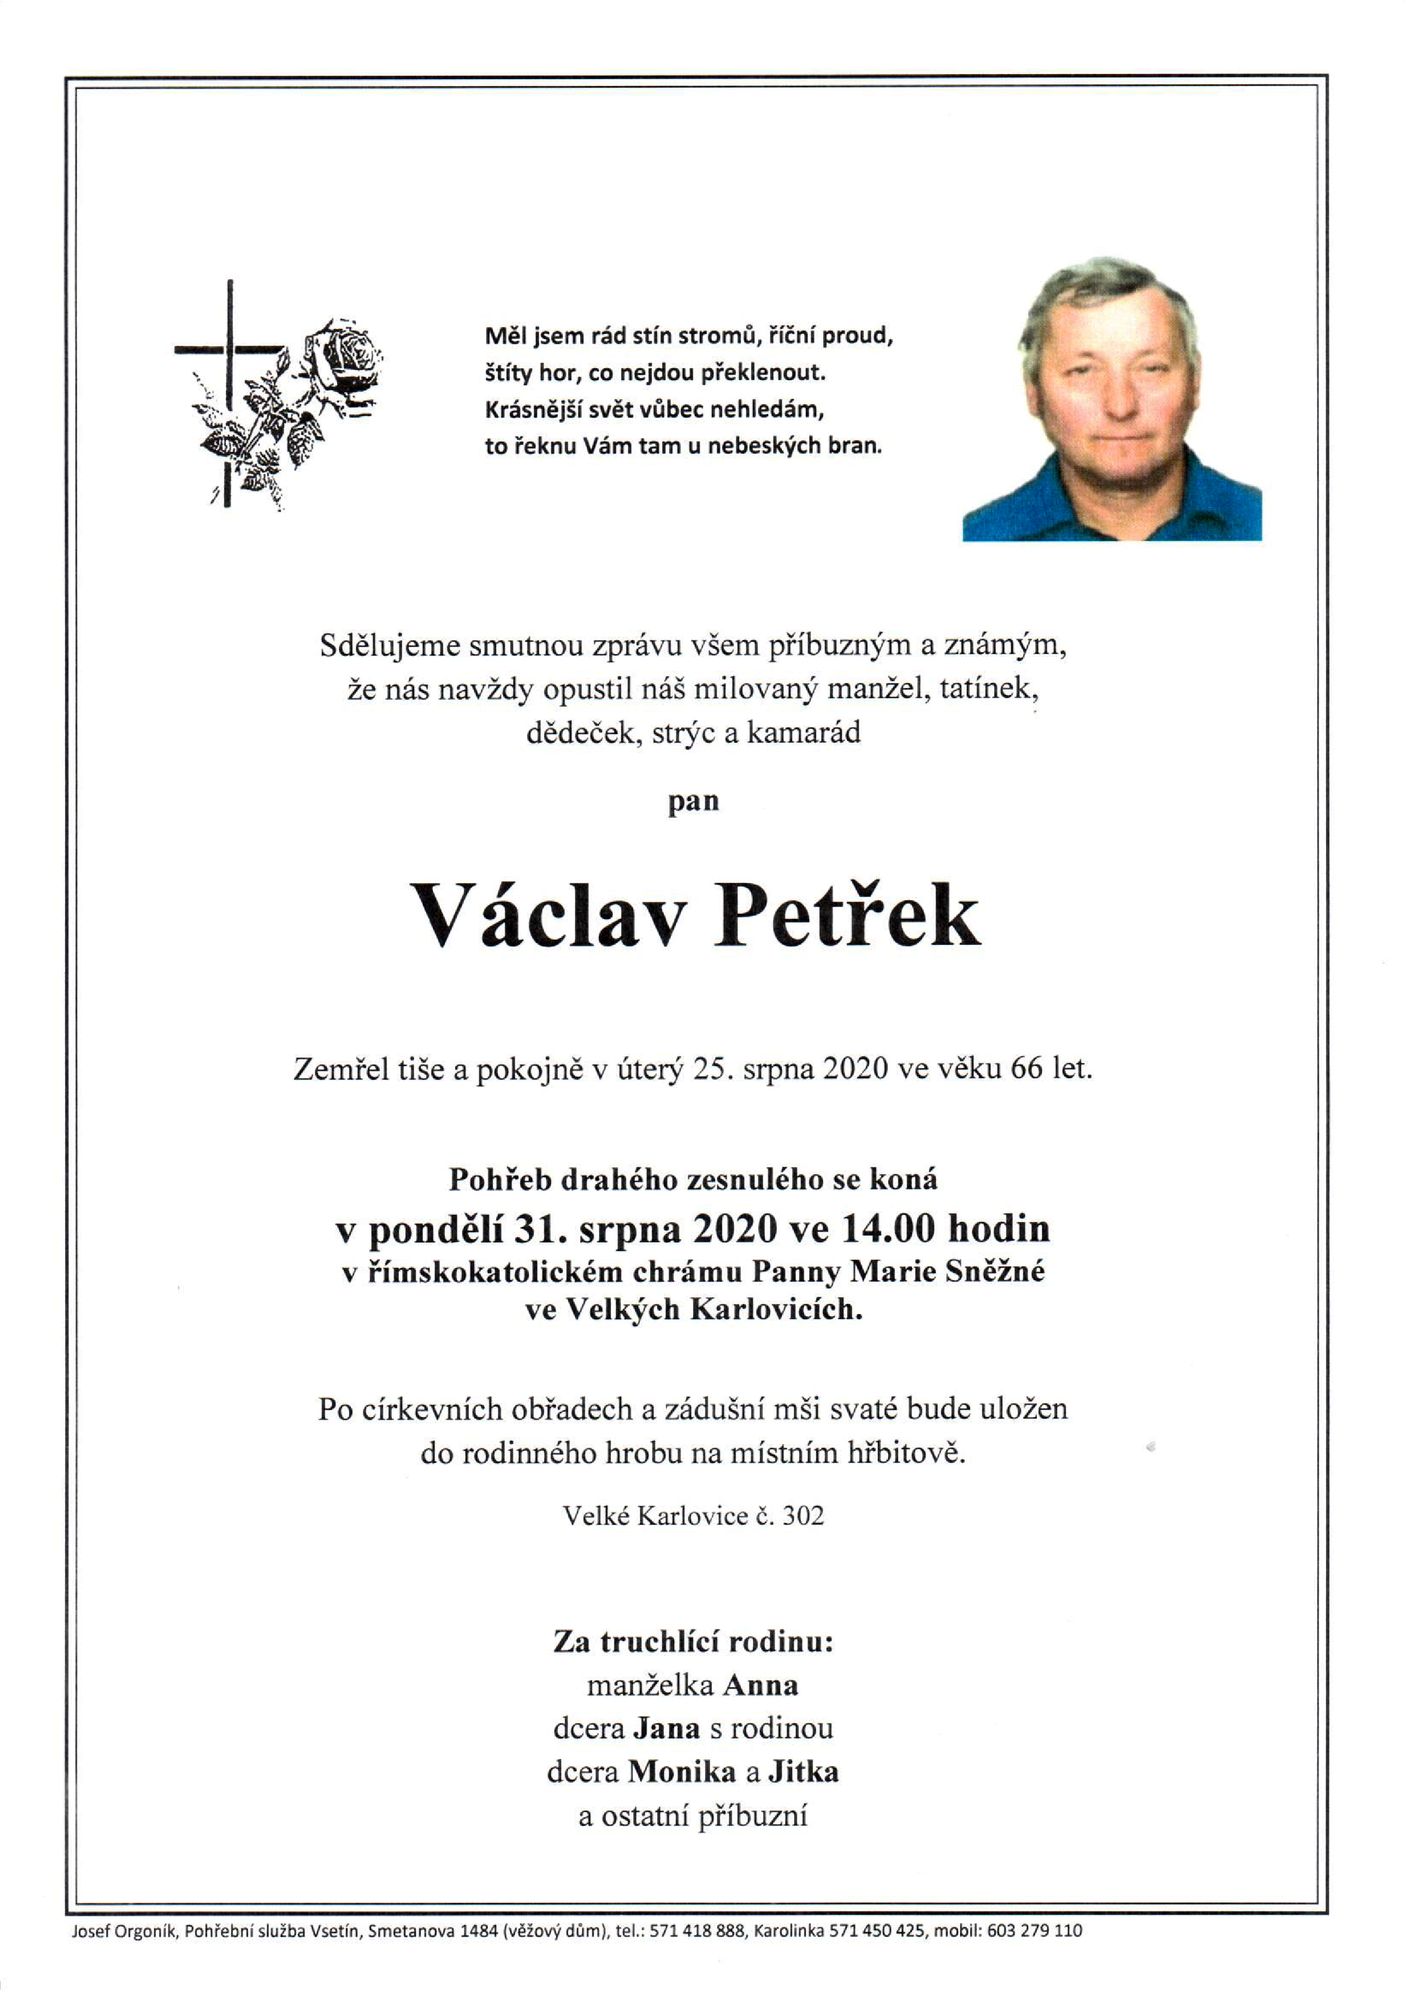 Václav Petřek